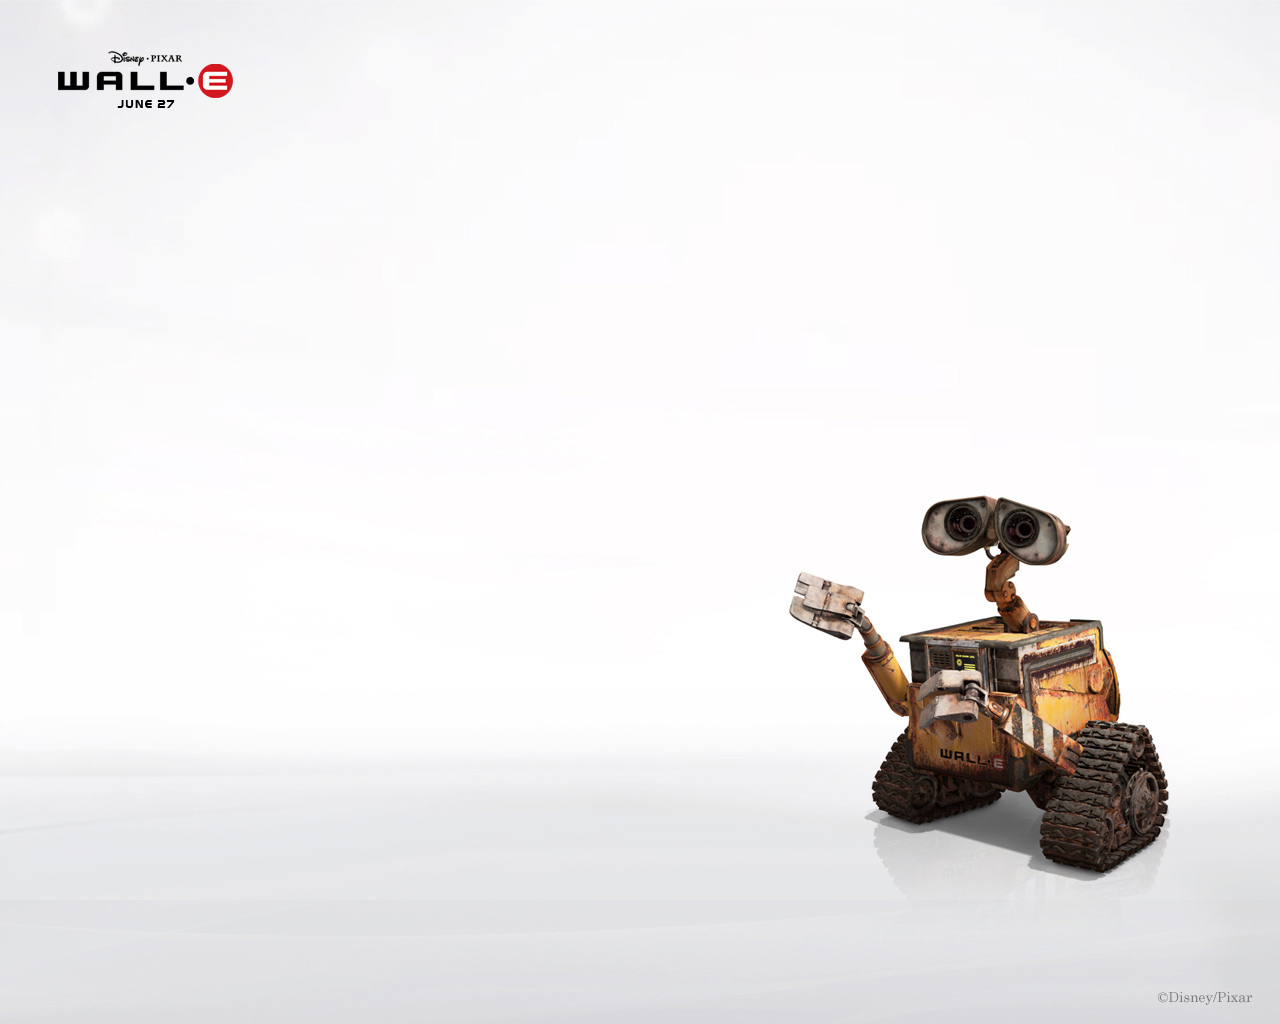 壁纸1280x1024动画电影 机器人总动员WALL E壁纸 动画电影《机器人总动员WALL·E 》壁纸 动画电影《机器人总动员WALL·E 》图片 动画电影《机器人总动员WALL·E 》素材 影视壁纸 影视图库 影视图片素材桌面壁纸